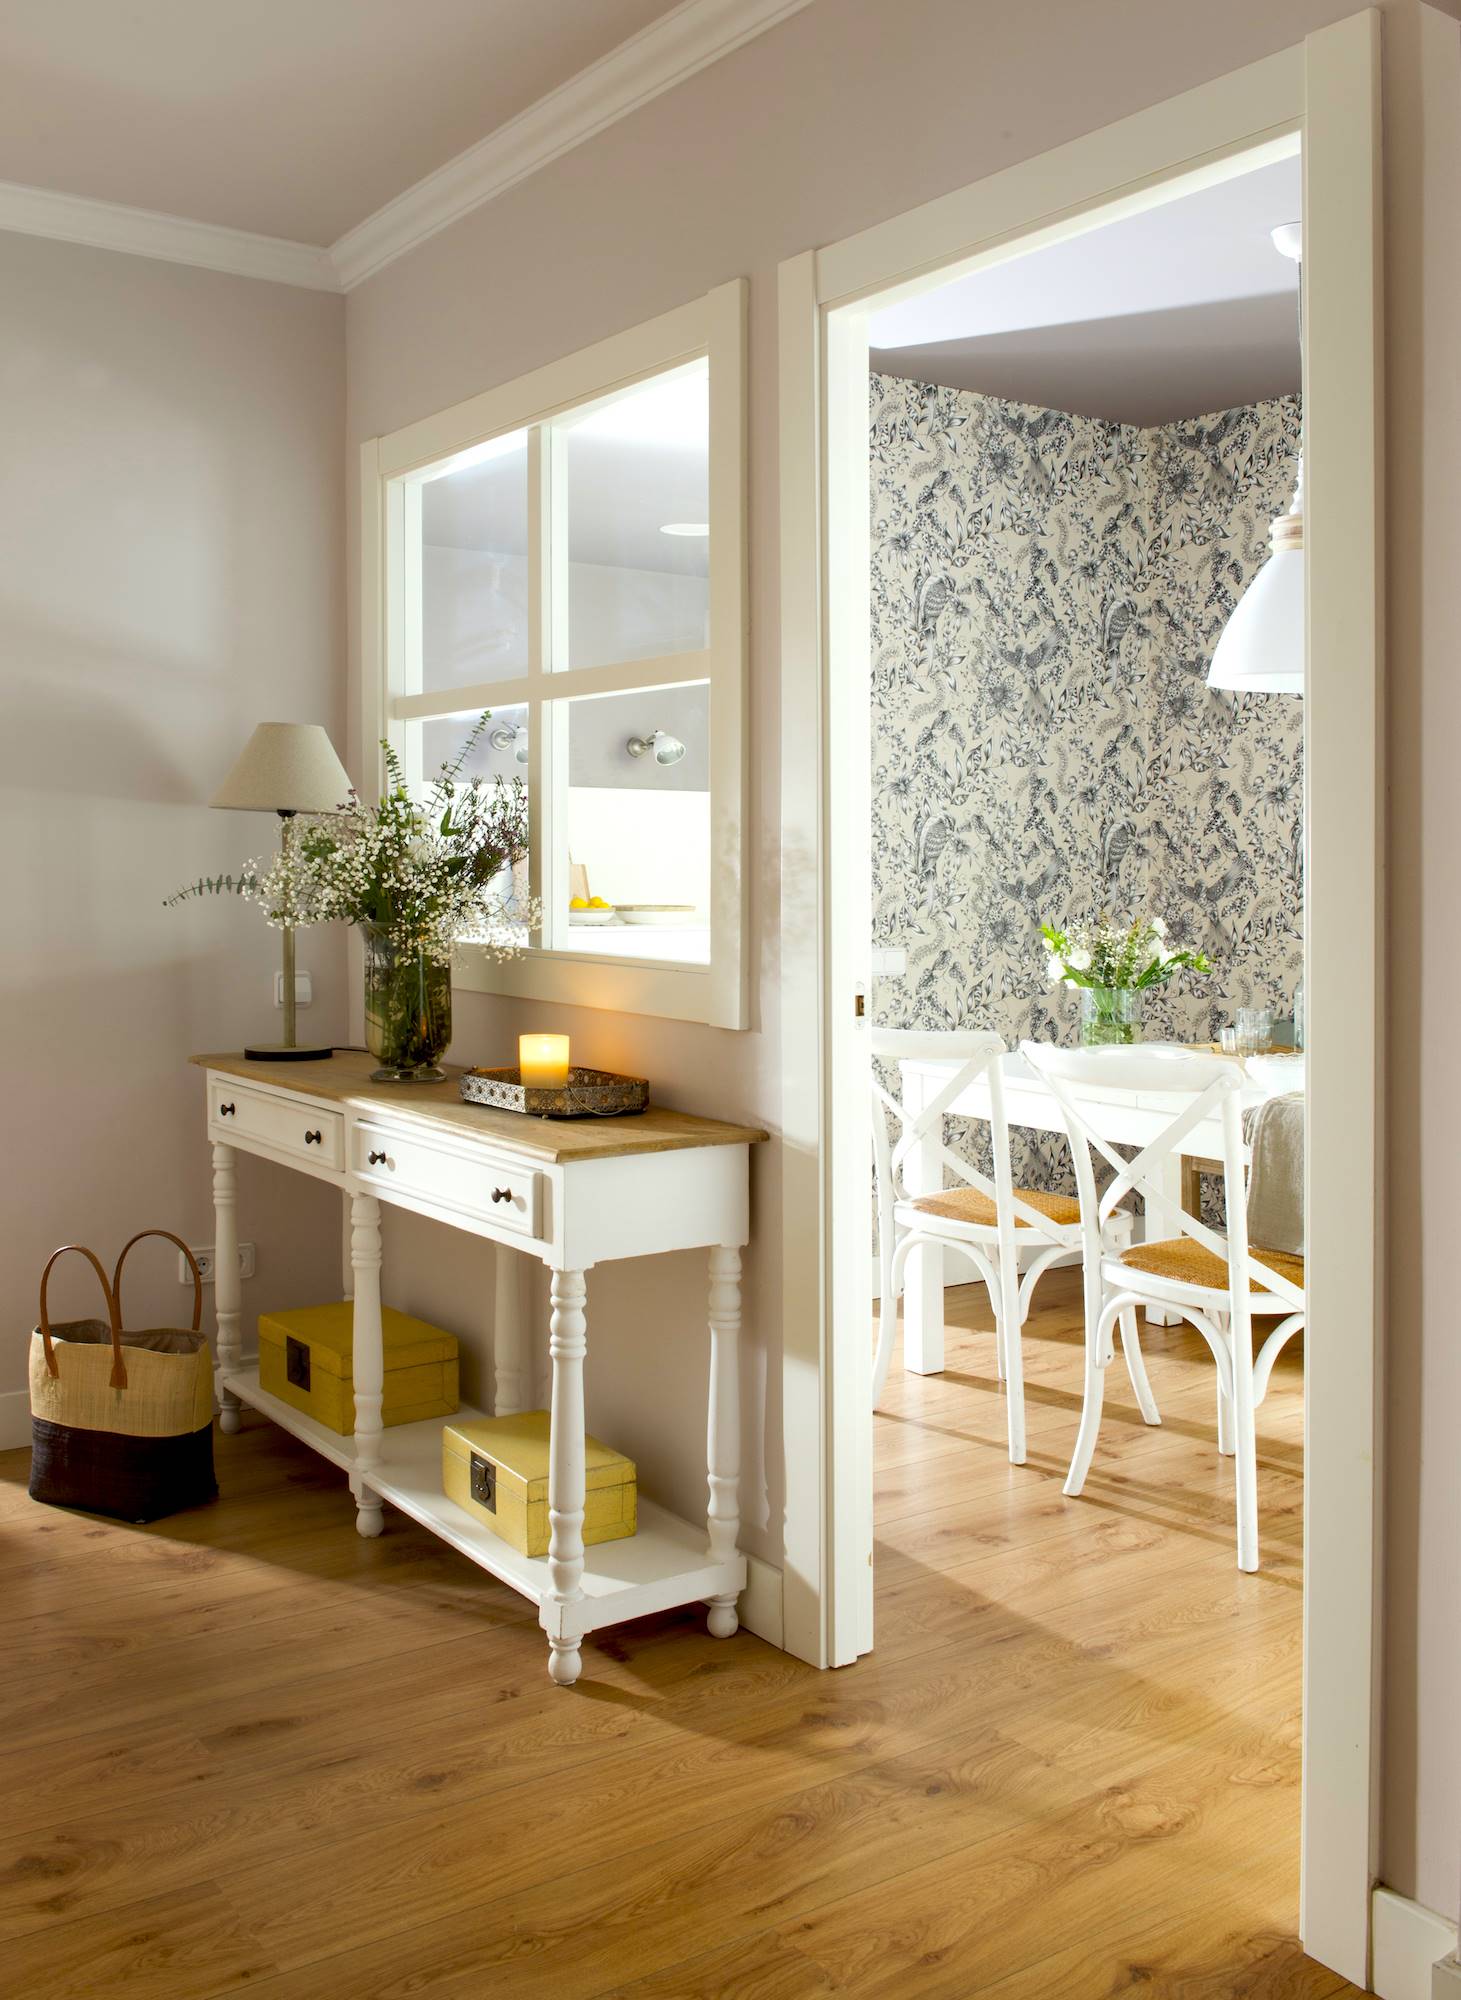 Recibidor pequeño con papel pintado, muebles blancos y detalles en amarillo.